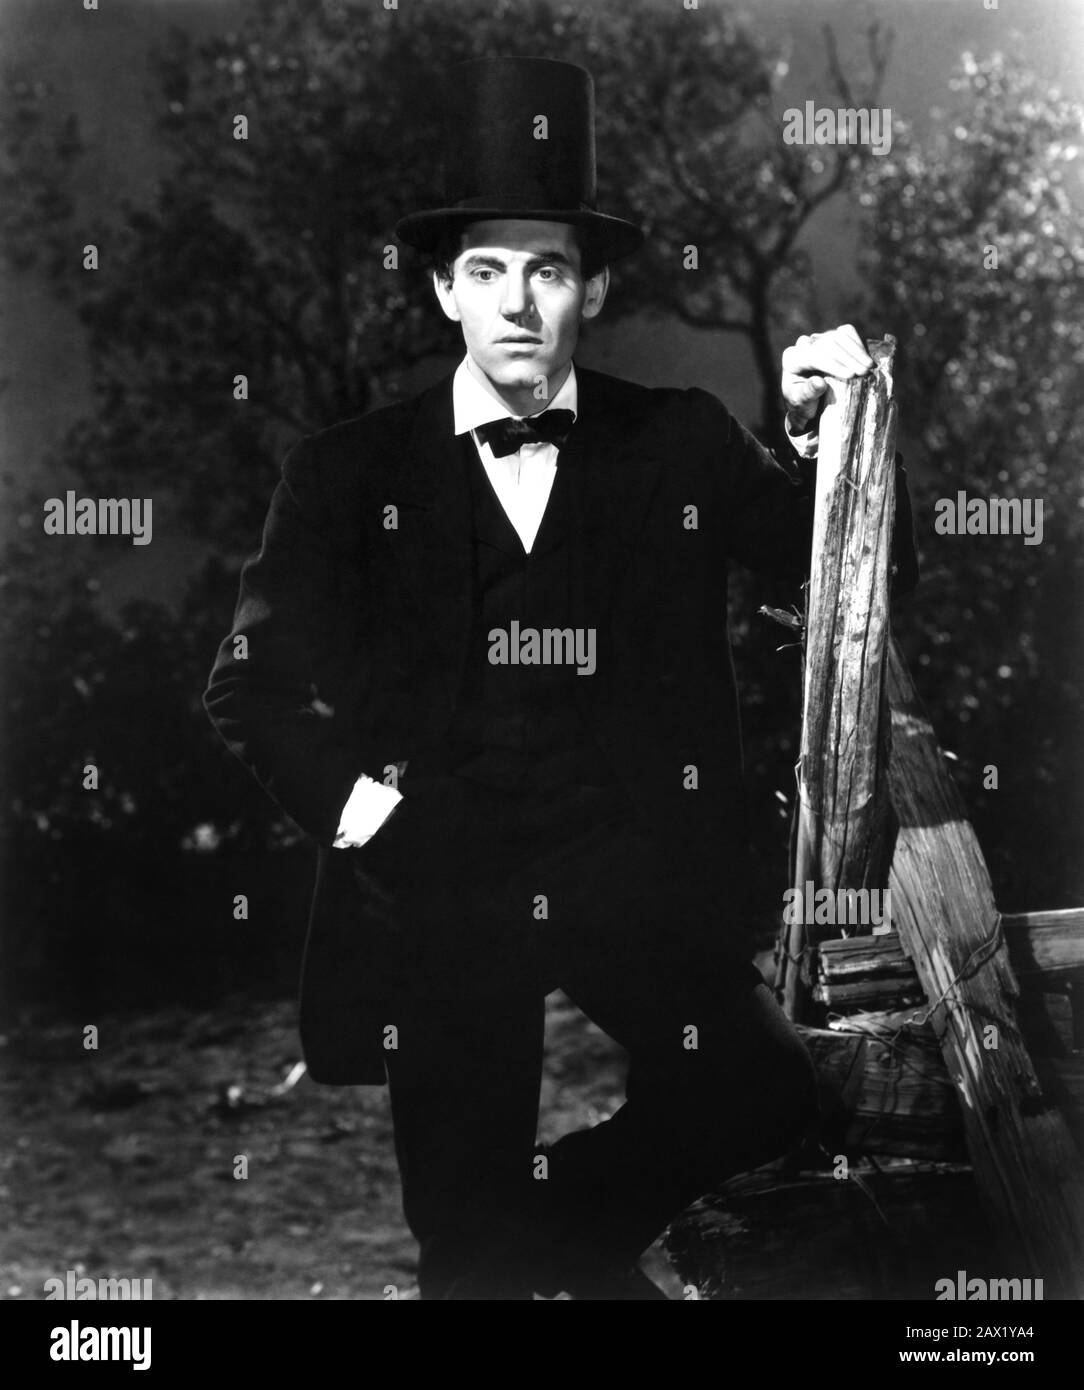 1939 :  The celebrated movie actor HENRY FONDA  as Lincoln in the movie YOUNG Mr. LINCOLN ( Alba di gloria  ) by John Ford , from a screenplay by  Lamar Trotti   . The U.S.A. President ABRAHAM LINCOLN ( 1809 - 1865 ) -  Presidente della Repubblica - Stati Uniti - USA - ritratto - Abramo  - impersonator - sosia - imitatore  - top hat - cappello a cilindro - tuba - papillon - tie bow - cravatta - gilet - MOVIE - CINEMA - FILM ----  Archivio GBB Stock Photo